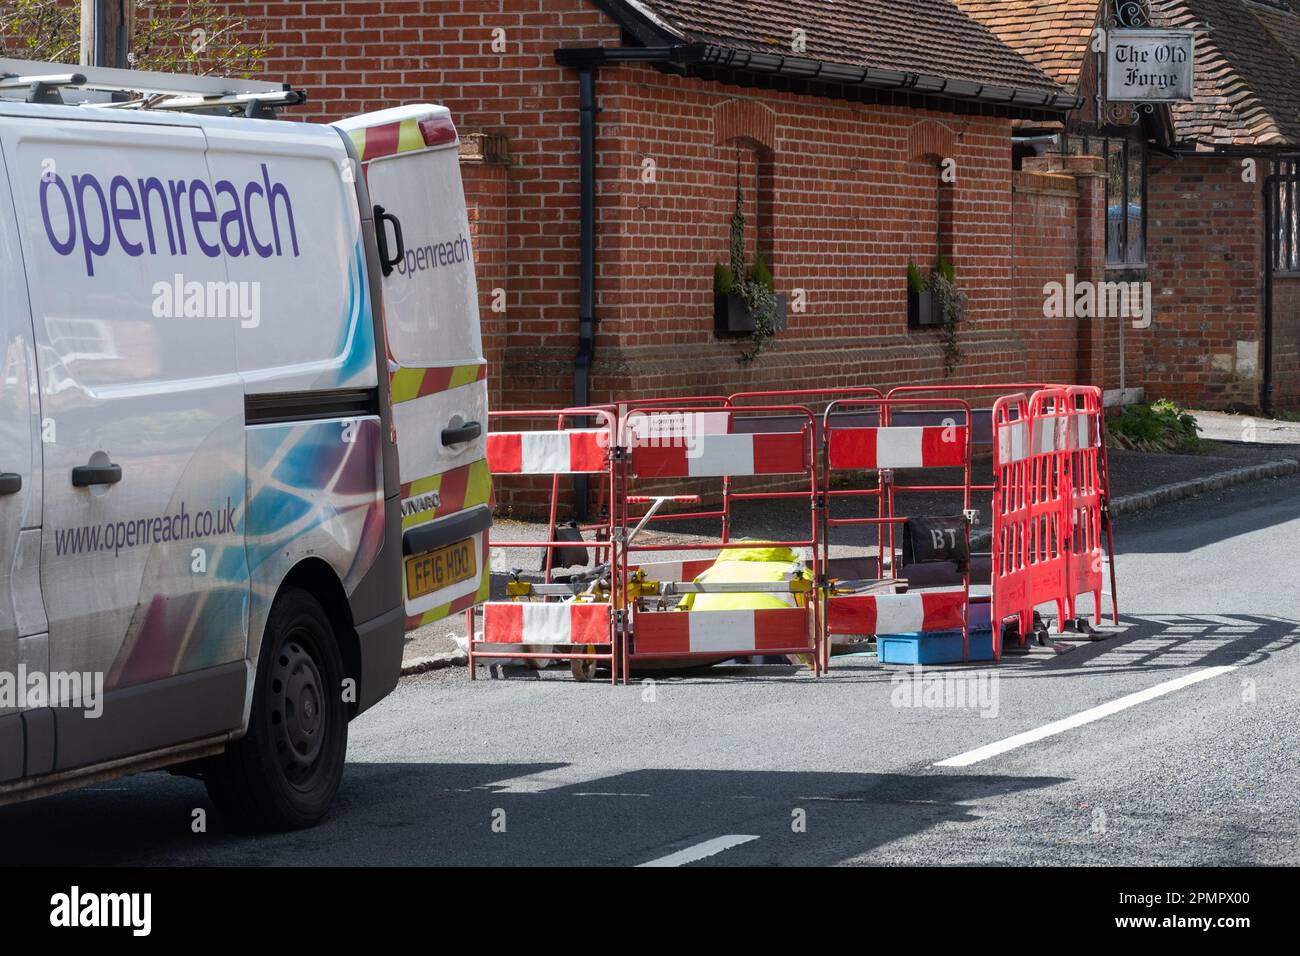 Ingegnere OpenReach che lavora in un buco della strada in un villaggio inglese, Berkshire, Inghilterra, Regno Unito Foto Stock